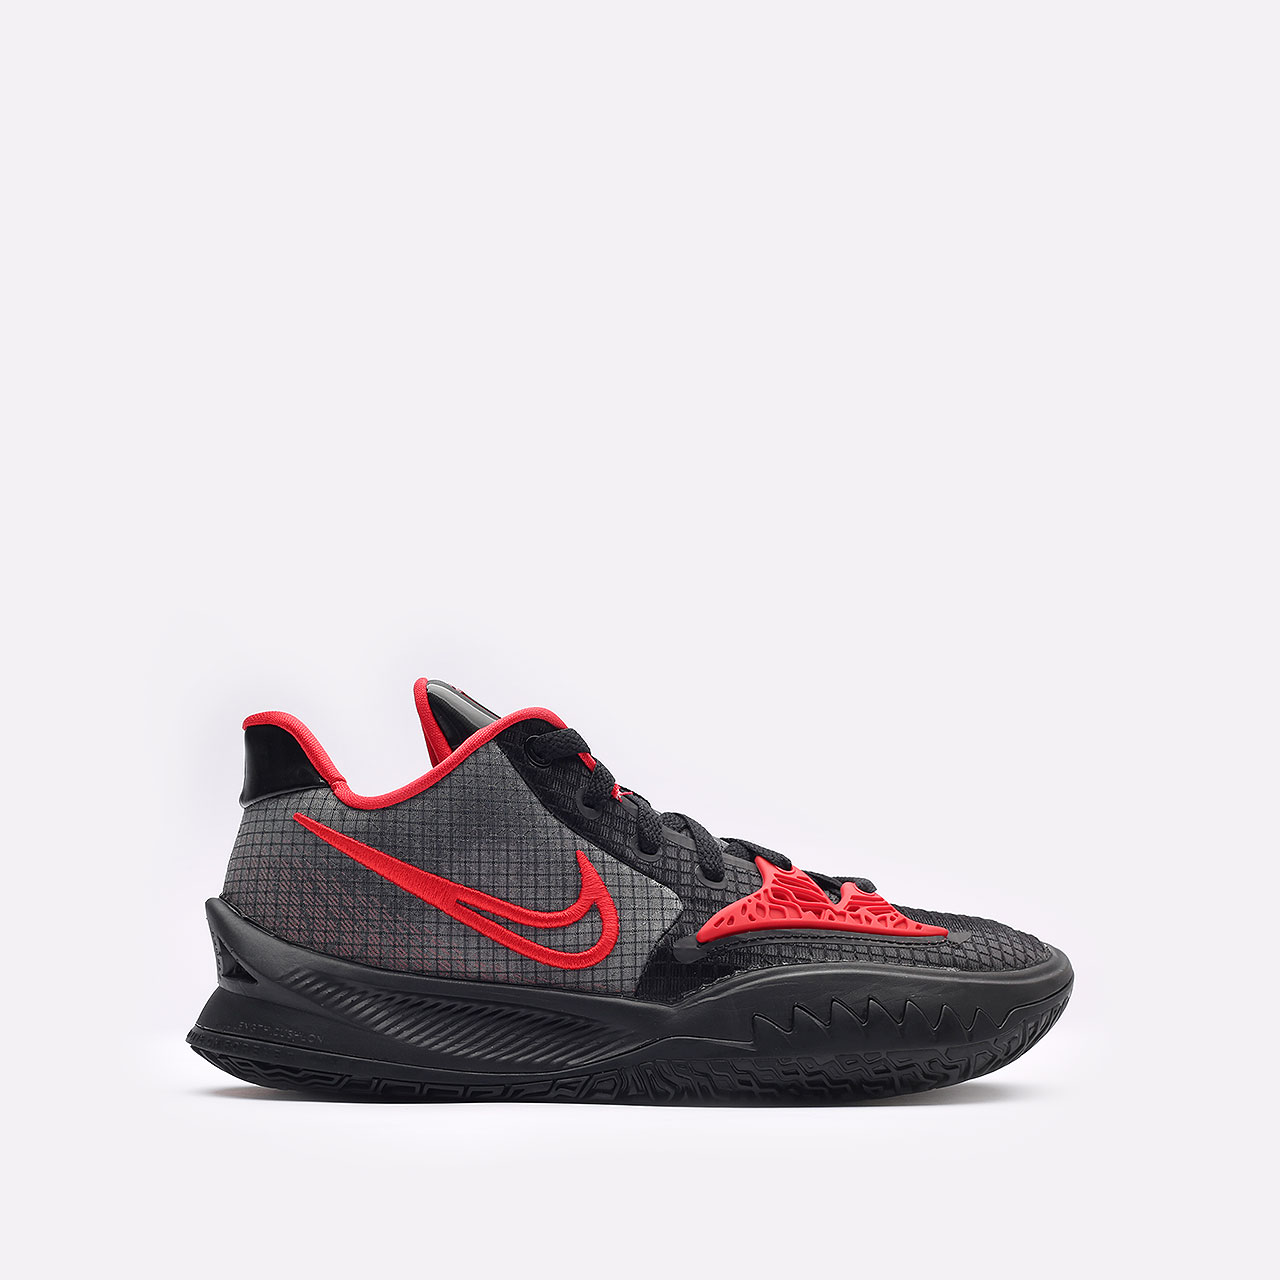  черные баскетбольные кроссовки Nike Kyrie Low 4 CW3985-006 - цена, описание, фото 1